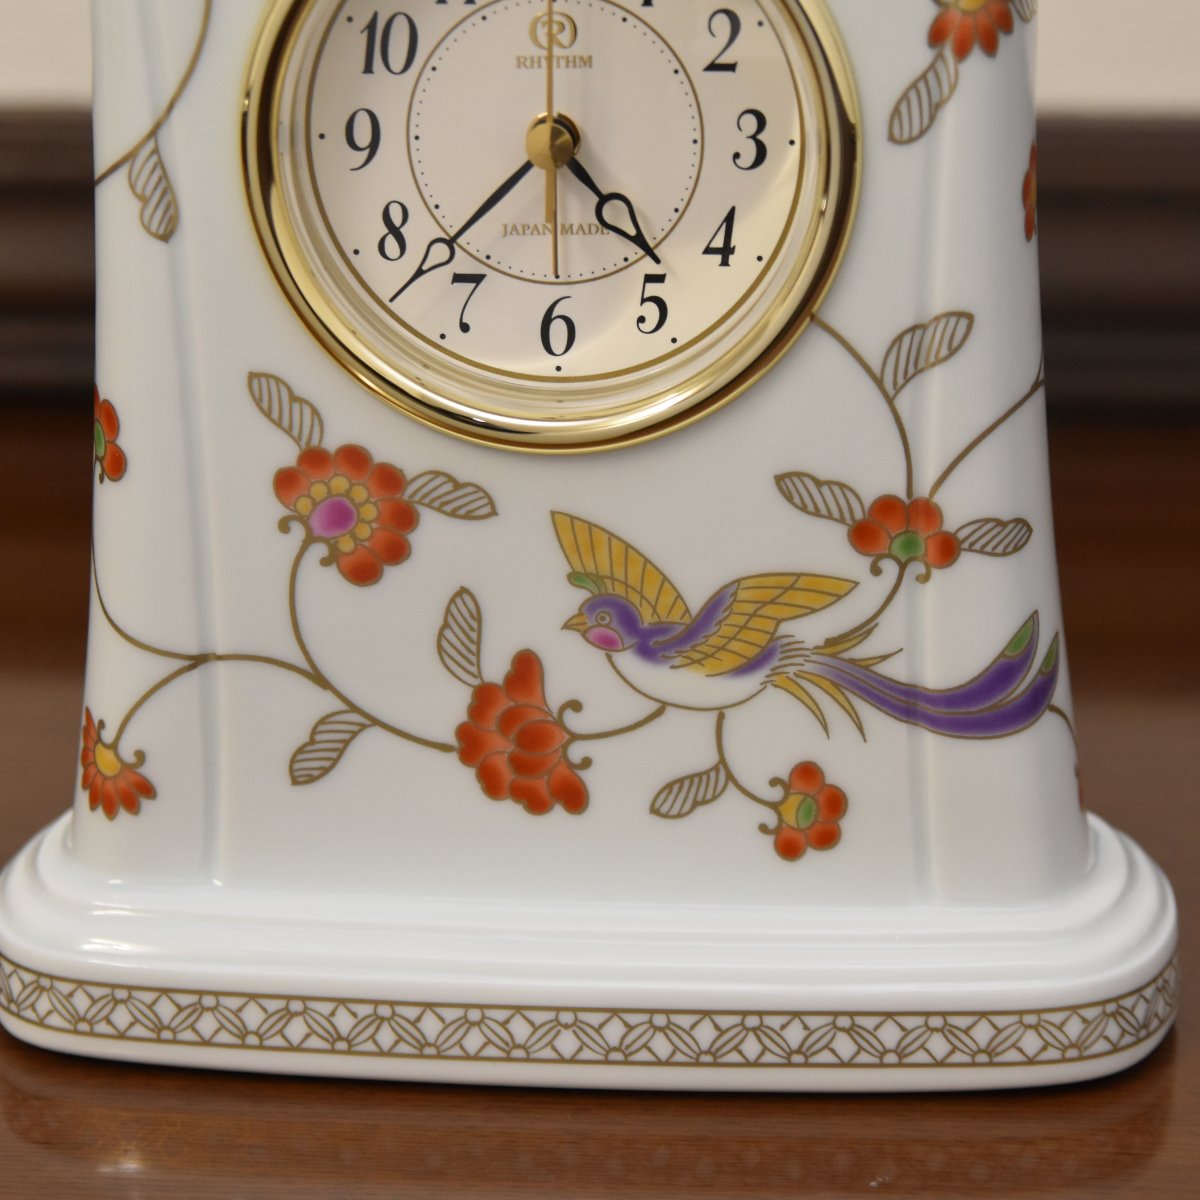 時計の下には羽ばたく鳳凰のデザインがあります。